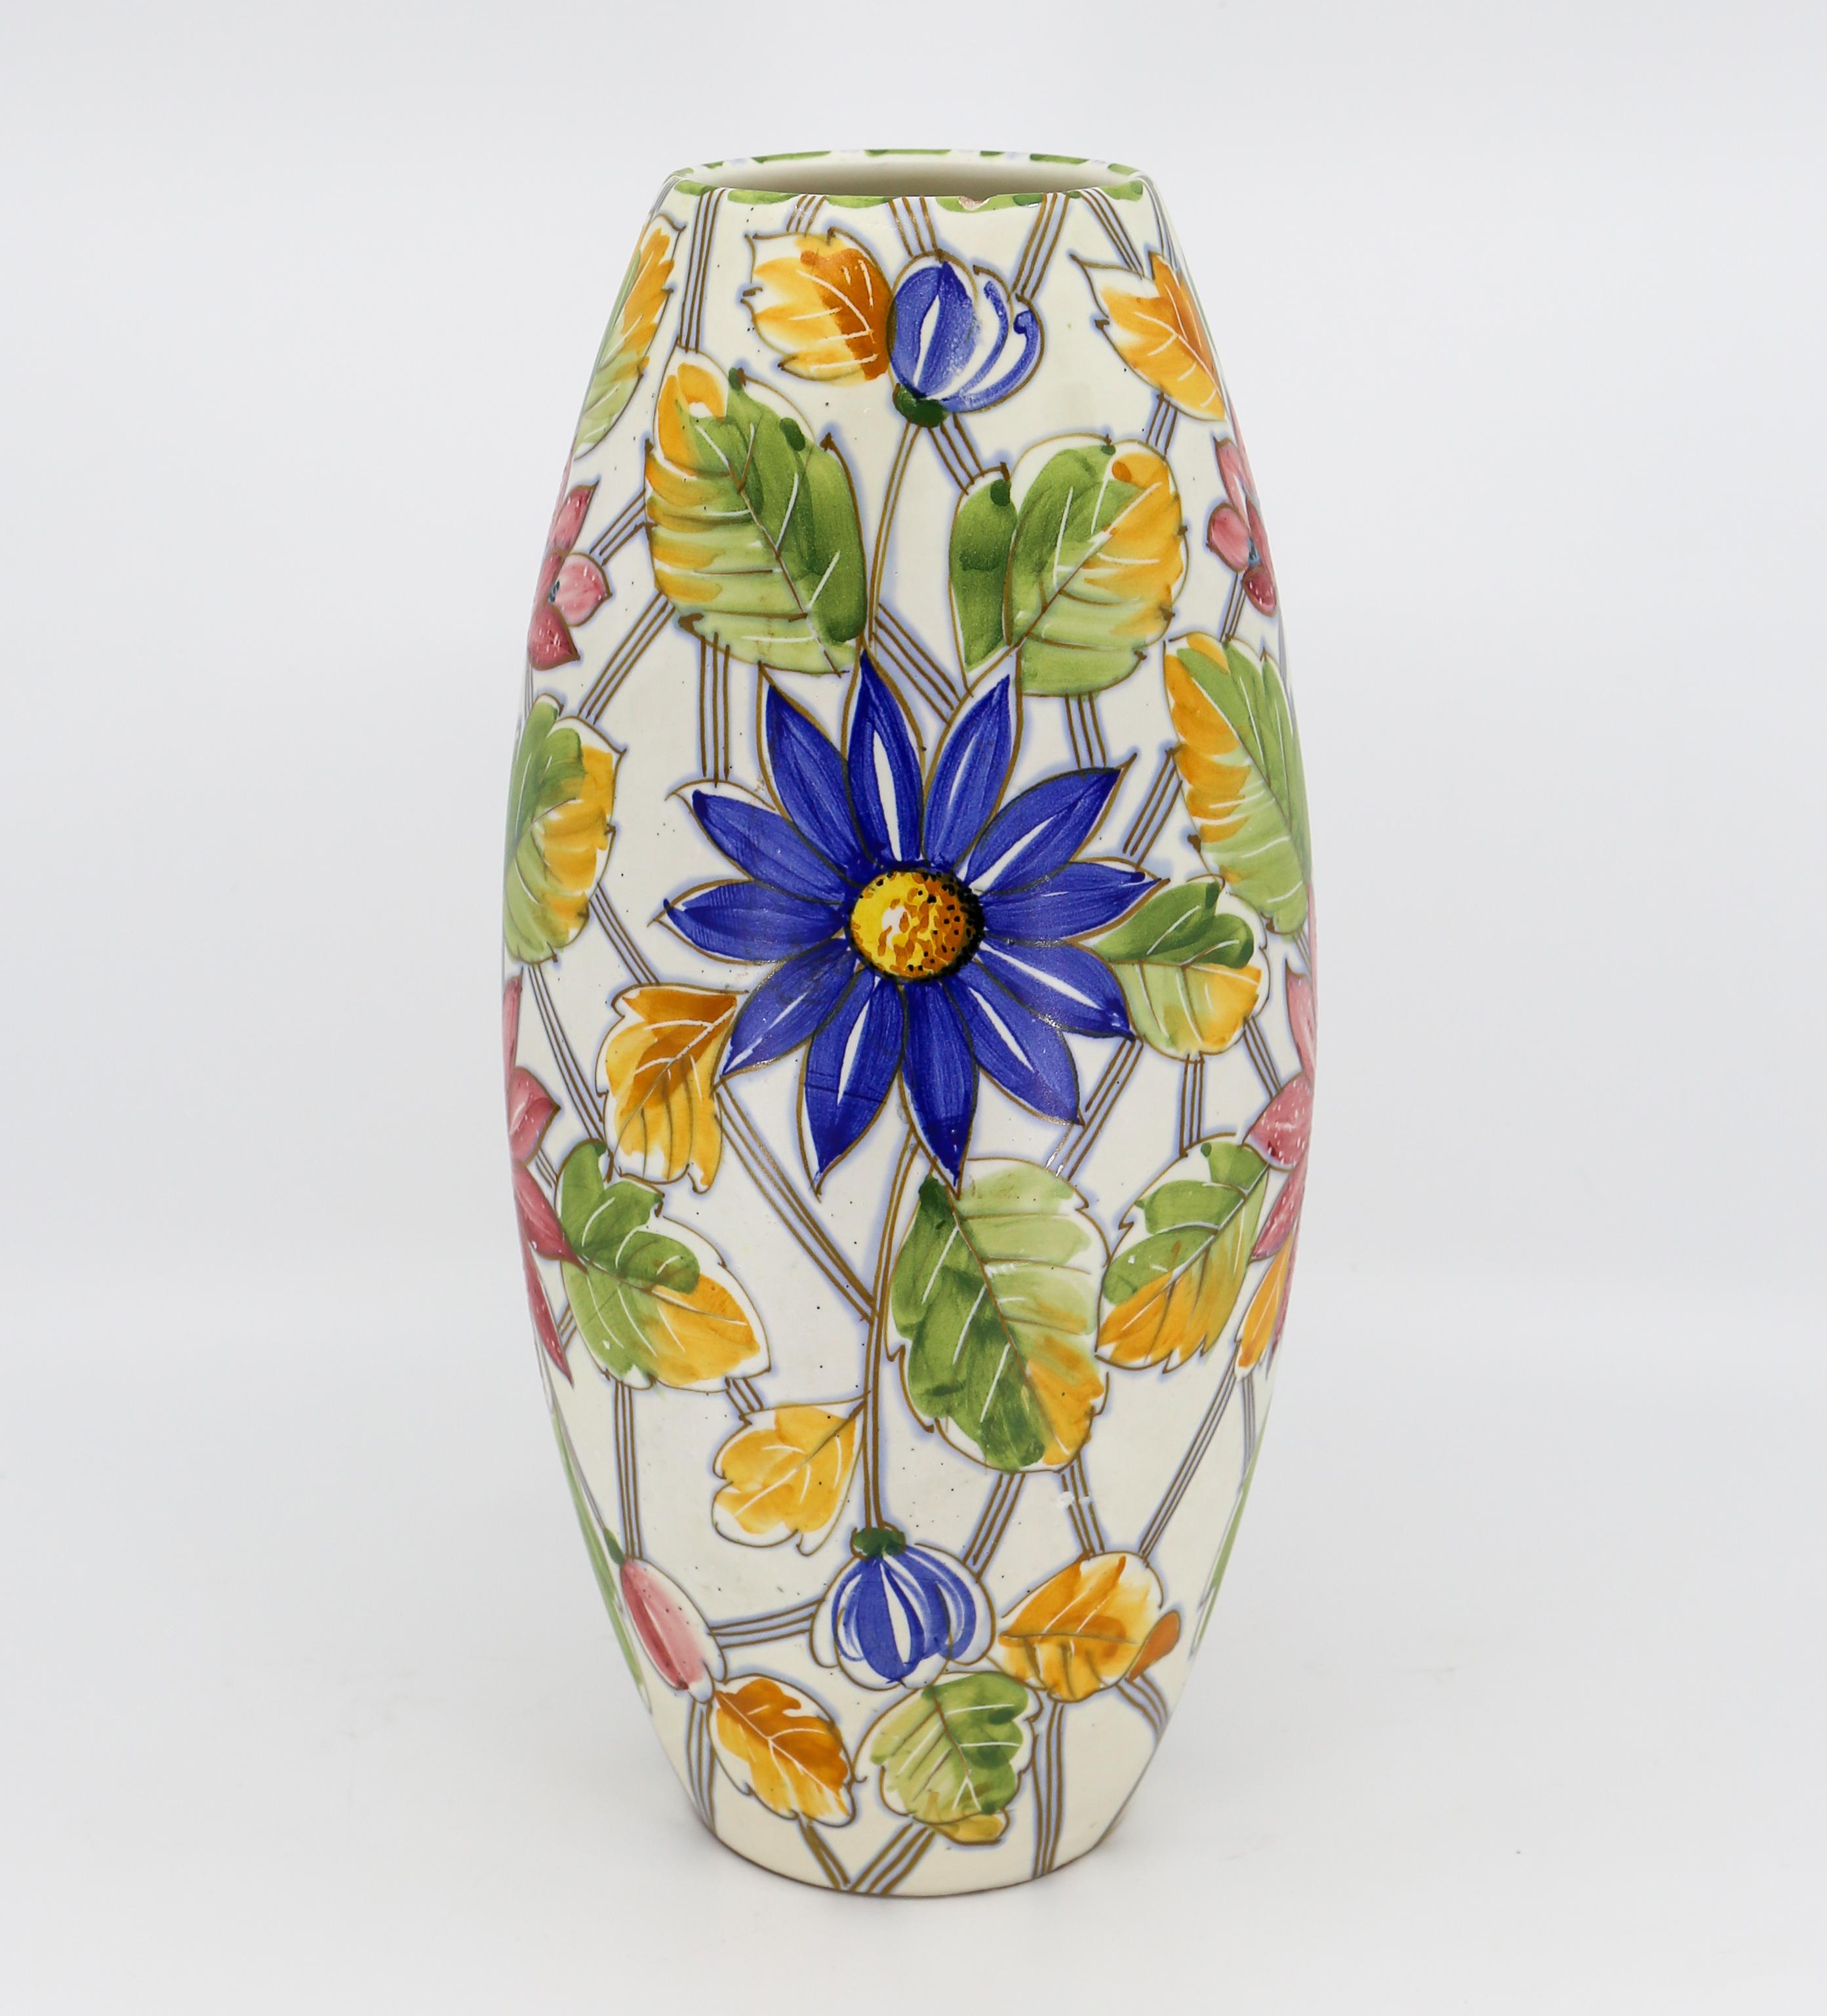 Magnifique vase italien ovale avec des motifs floraux colorés.
Hauteur 30 cm.
Diamètre 14 cm.